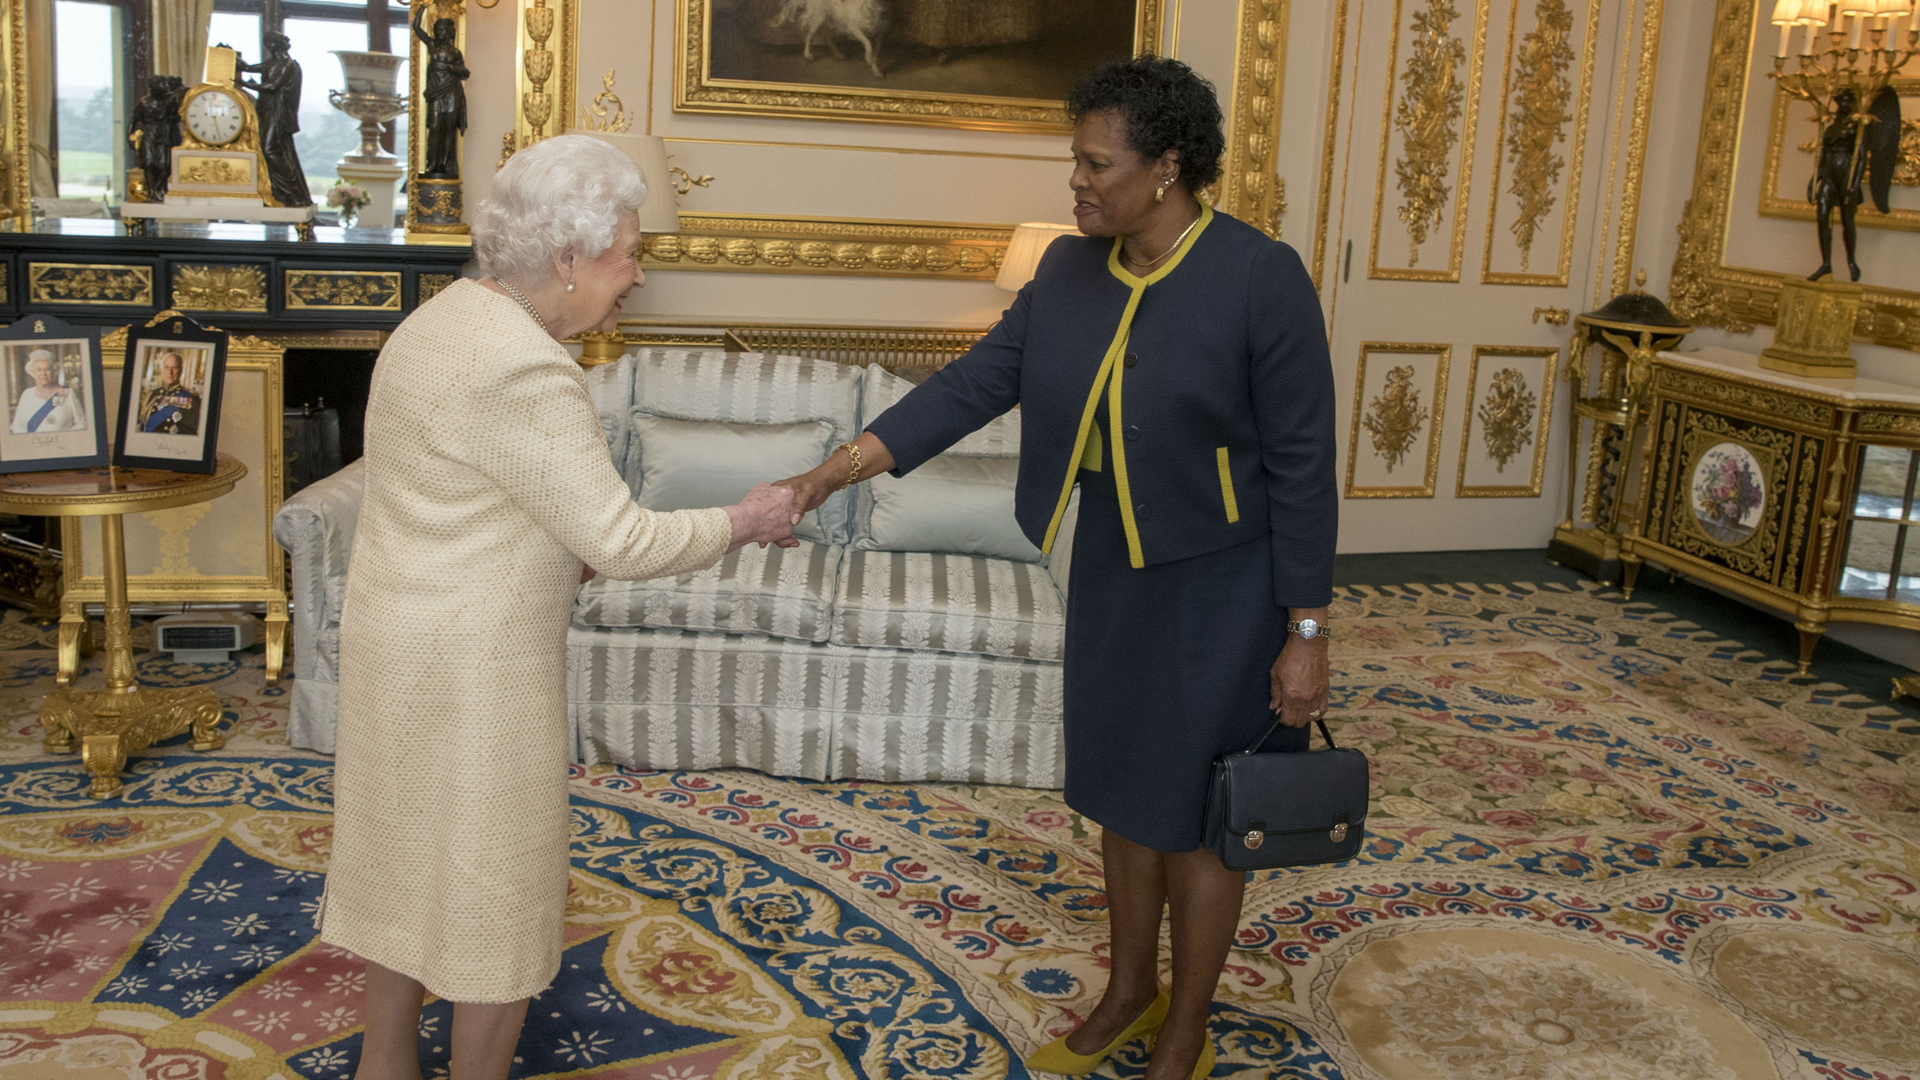 Königin Elisabeth II. gibt Sandra Mason, der ersten Präsidentin von Barbados, bei einem Empfang im Windsor Castle die Hand (Archivbild von 2018). | picture alliance / empics